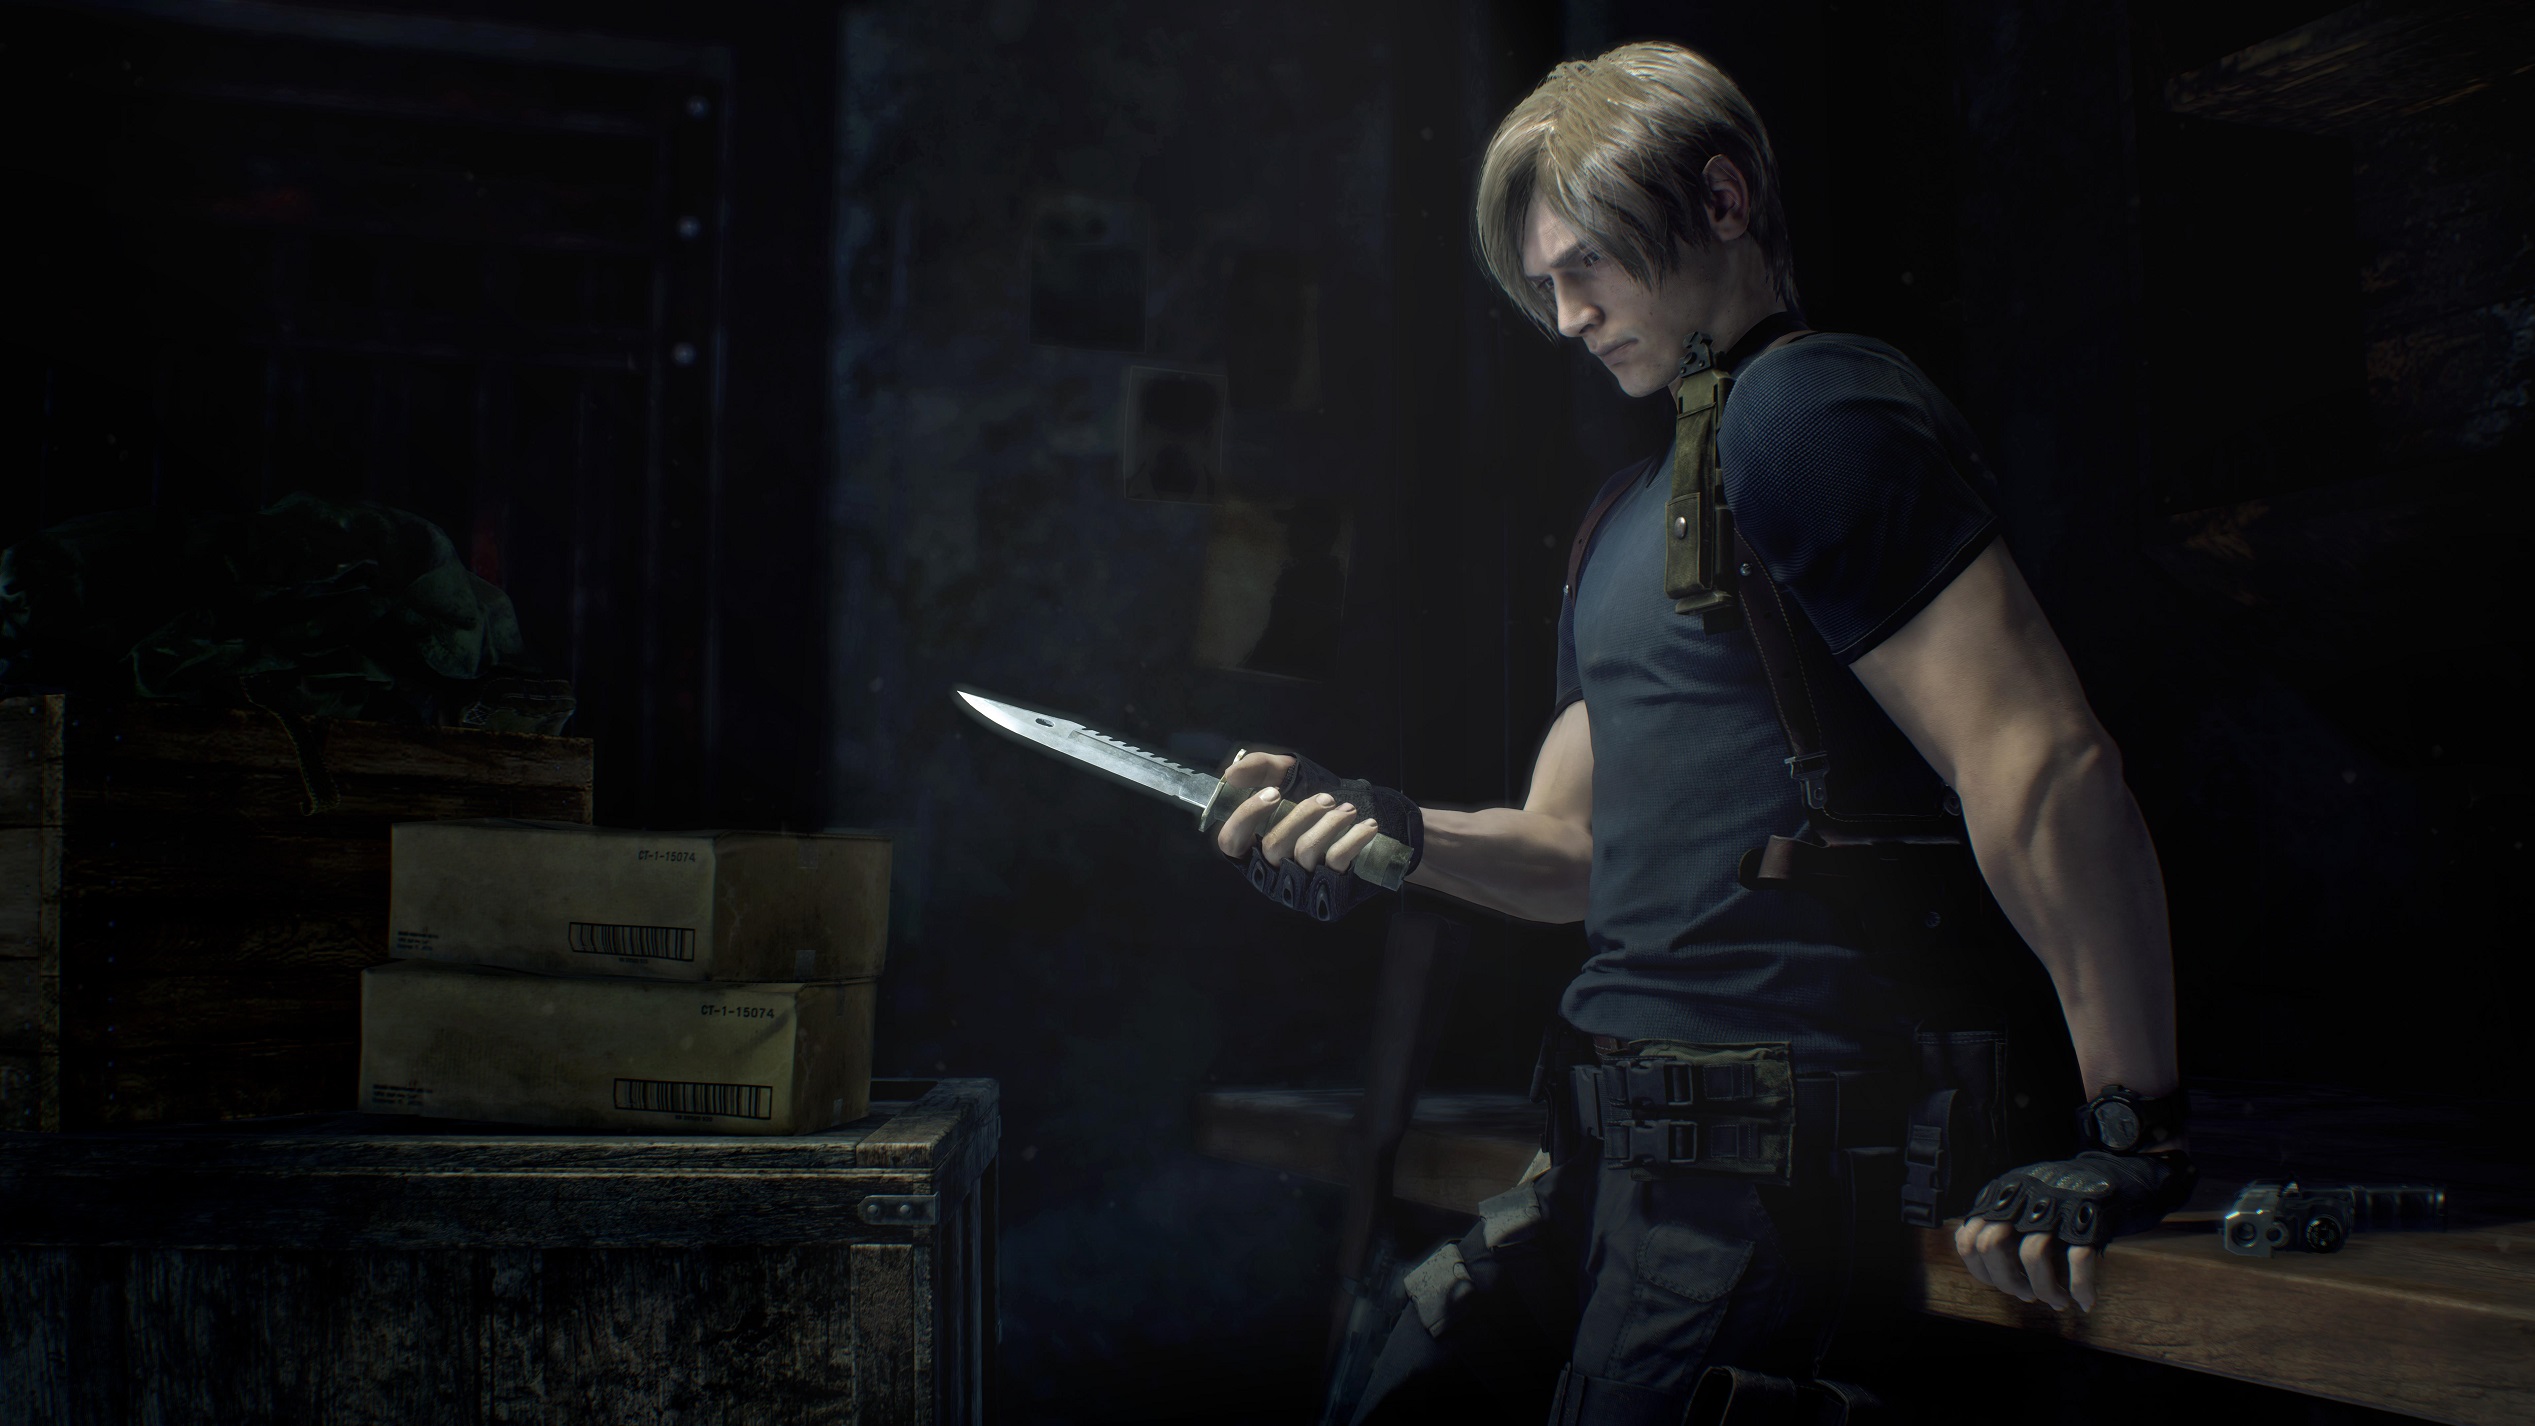 Resident Evil 4 Remake - Extended Gameplay 